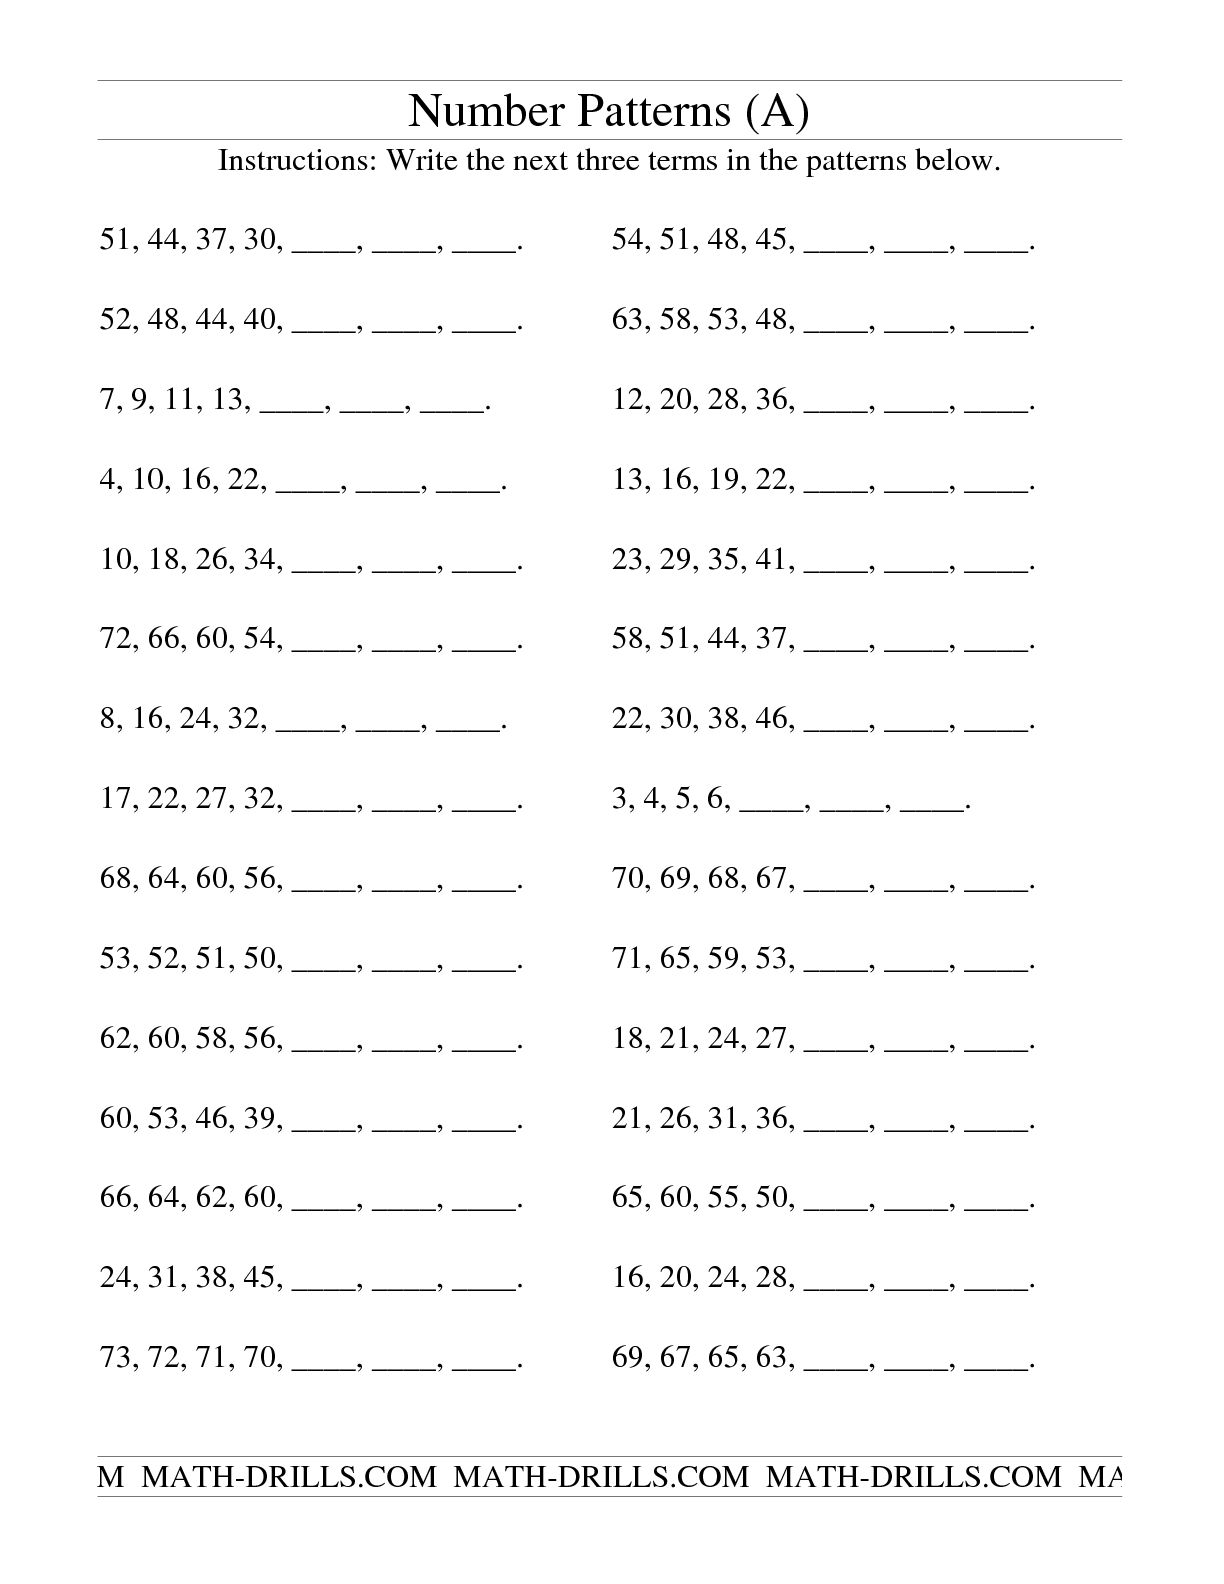 16 Best Images of Second Grade Number Patterns Worksheets - Number